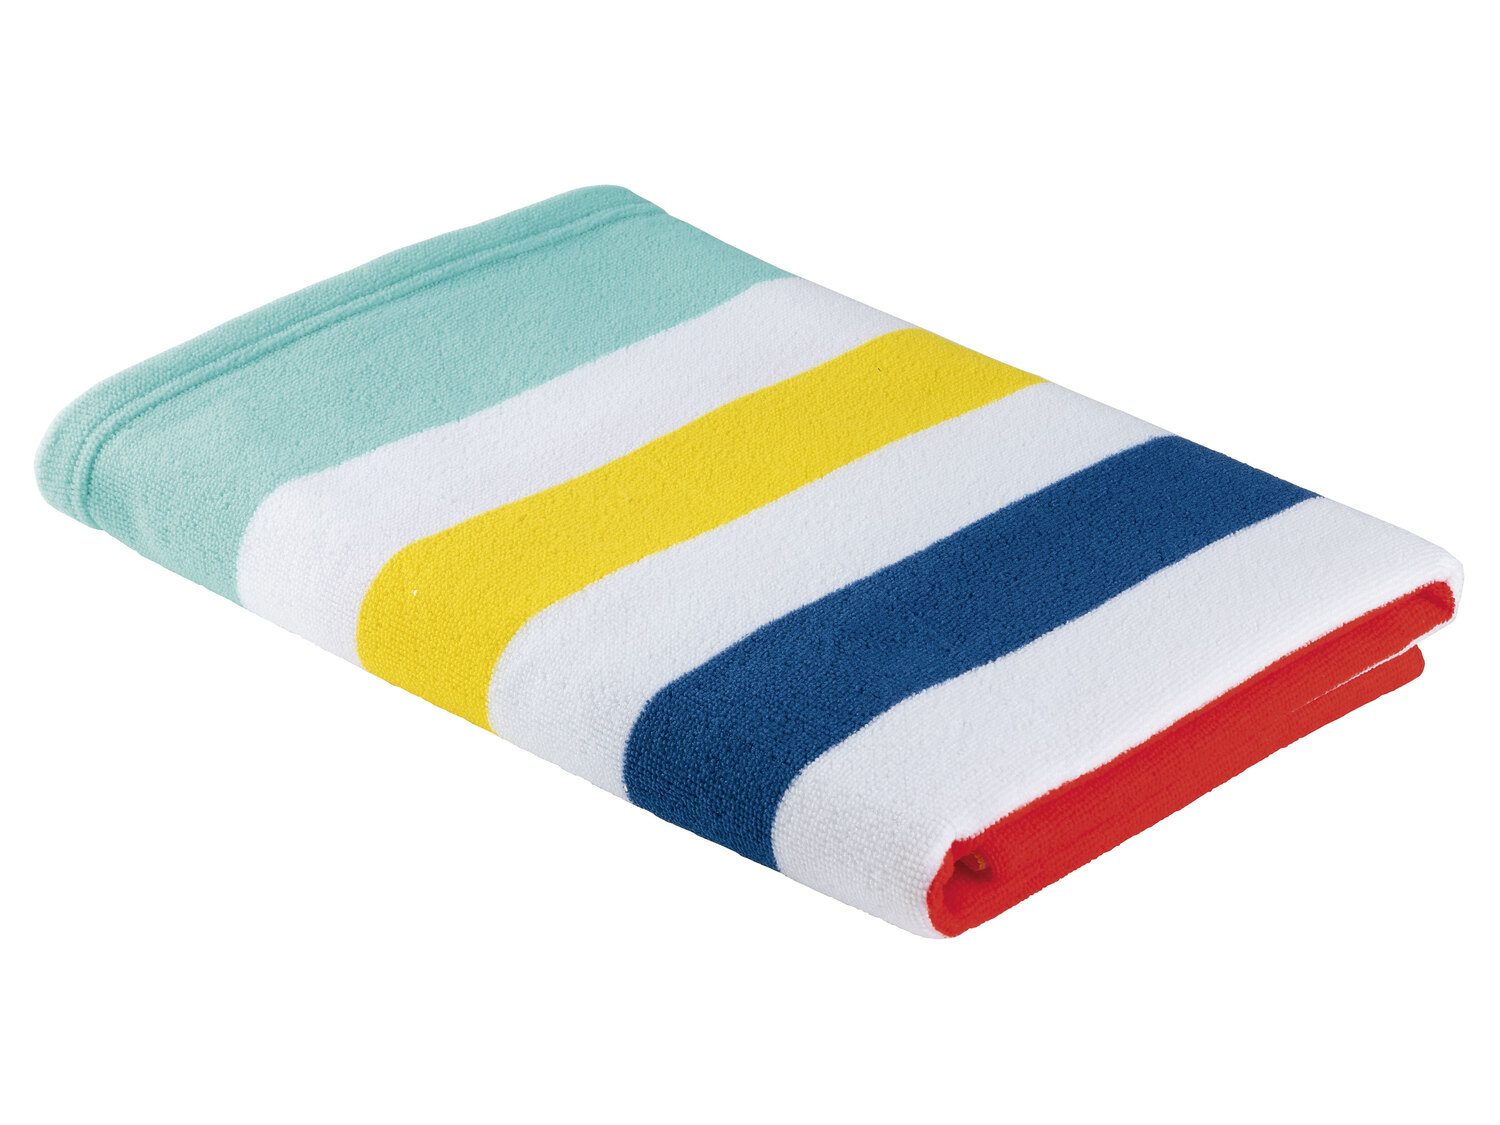 Ręcznik plażowy 75 x 150 cm Crivit, cena 14,99 PLN 
4 wzory 
- miękki i szybkoschnący
- ...